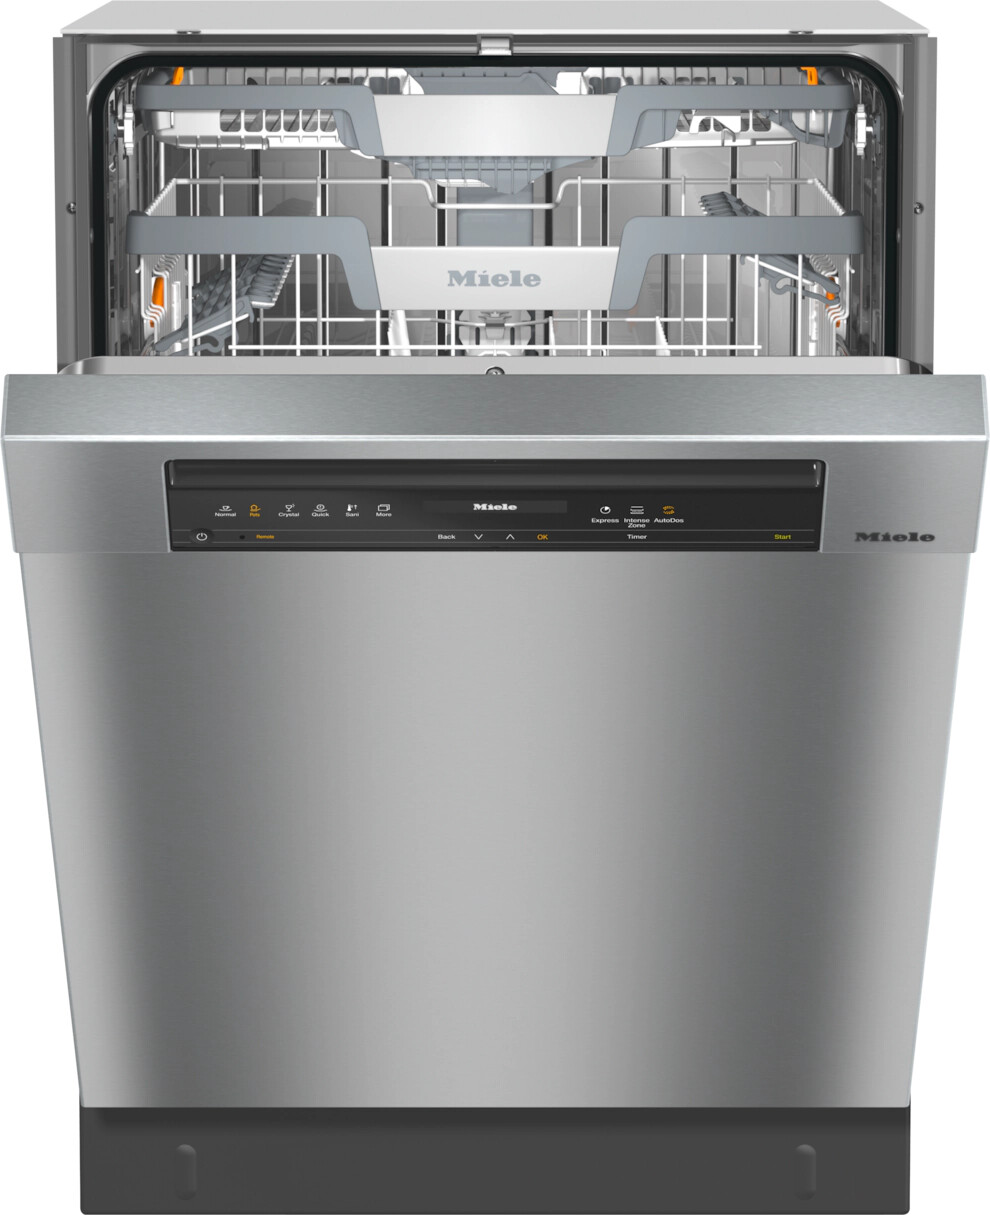 Miele 24"" Full Console Built In Dishwasher G7316SCUSS -  G 7316 SCU